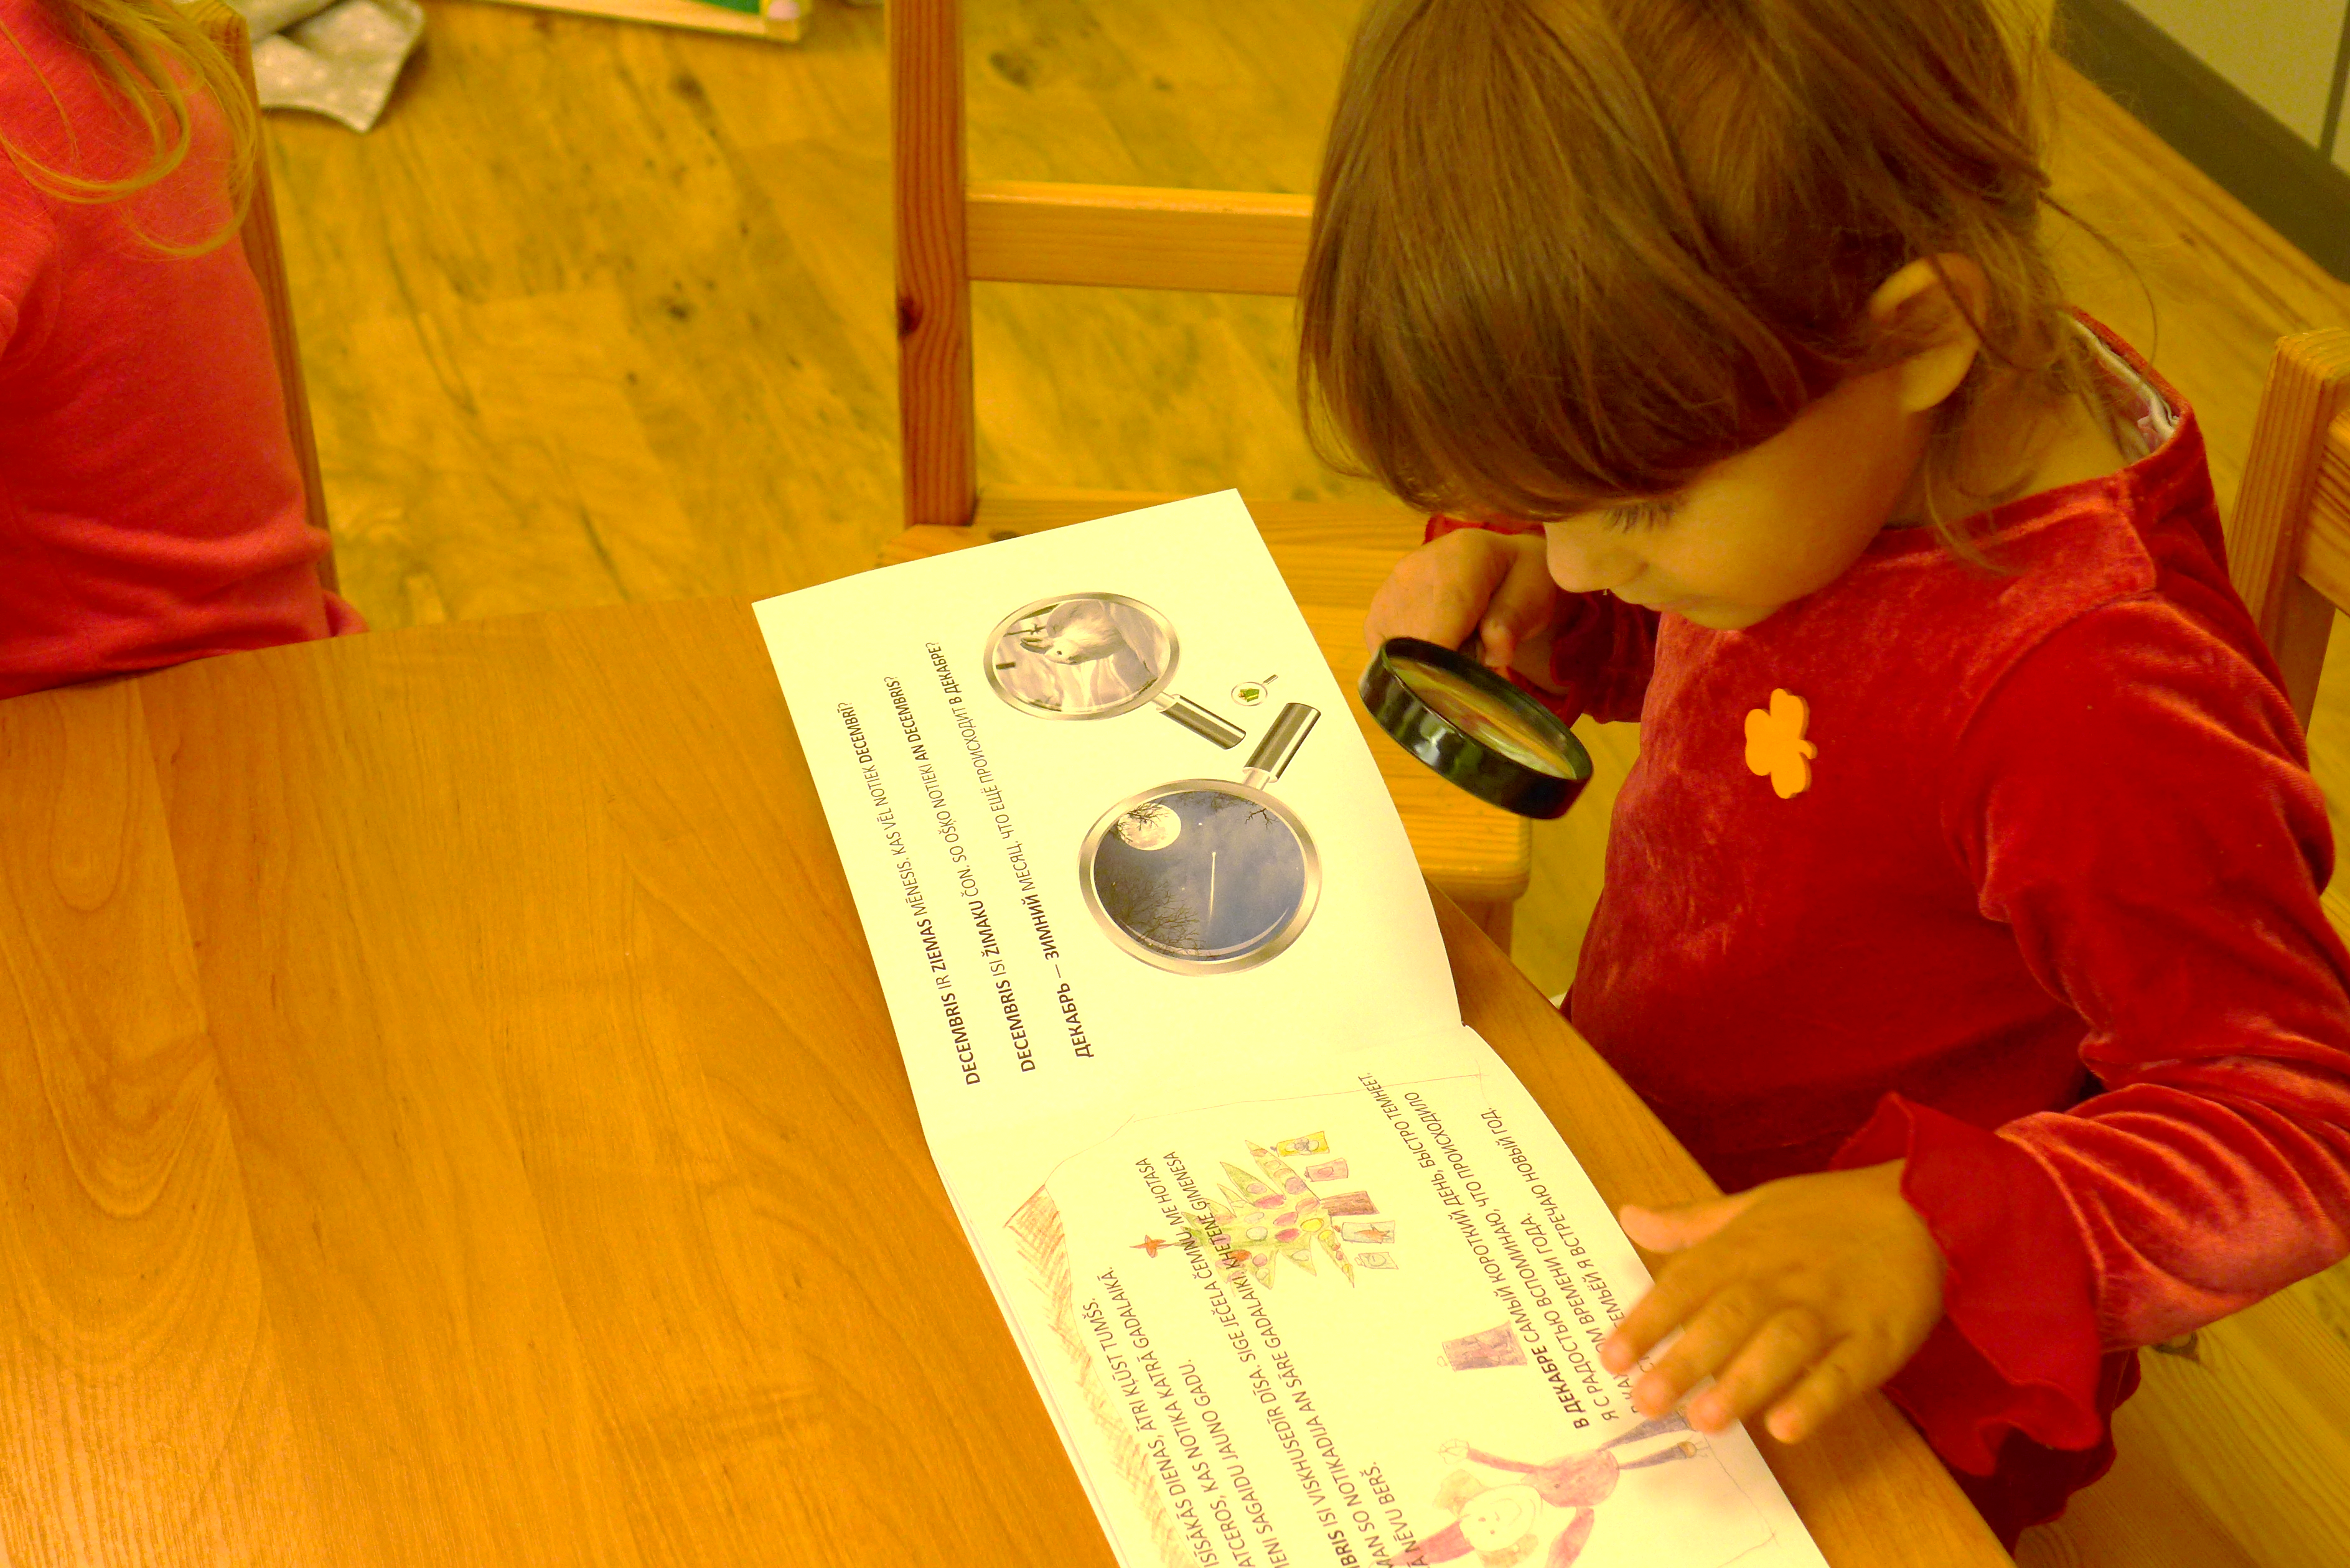 “KHETAUN (kopā): galvenie soļi romu bērnu iekļaušanai kvalitatīvās pirmsskolas izglītības programmās